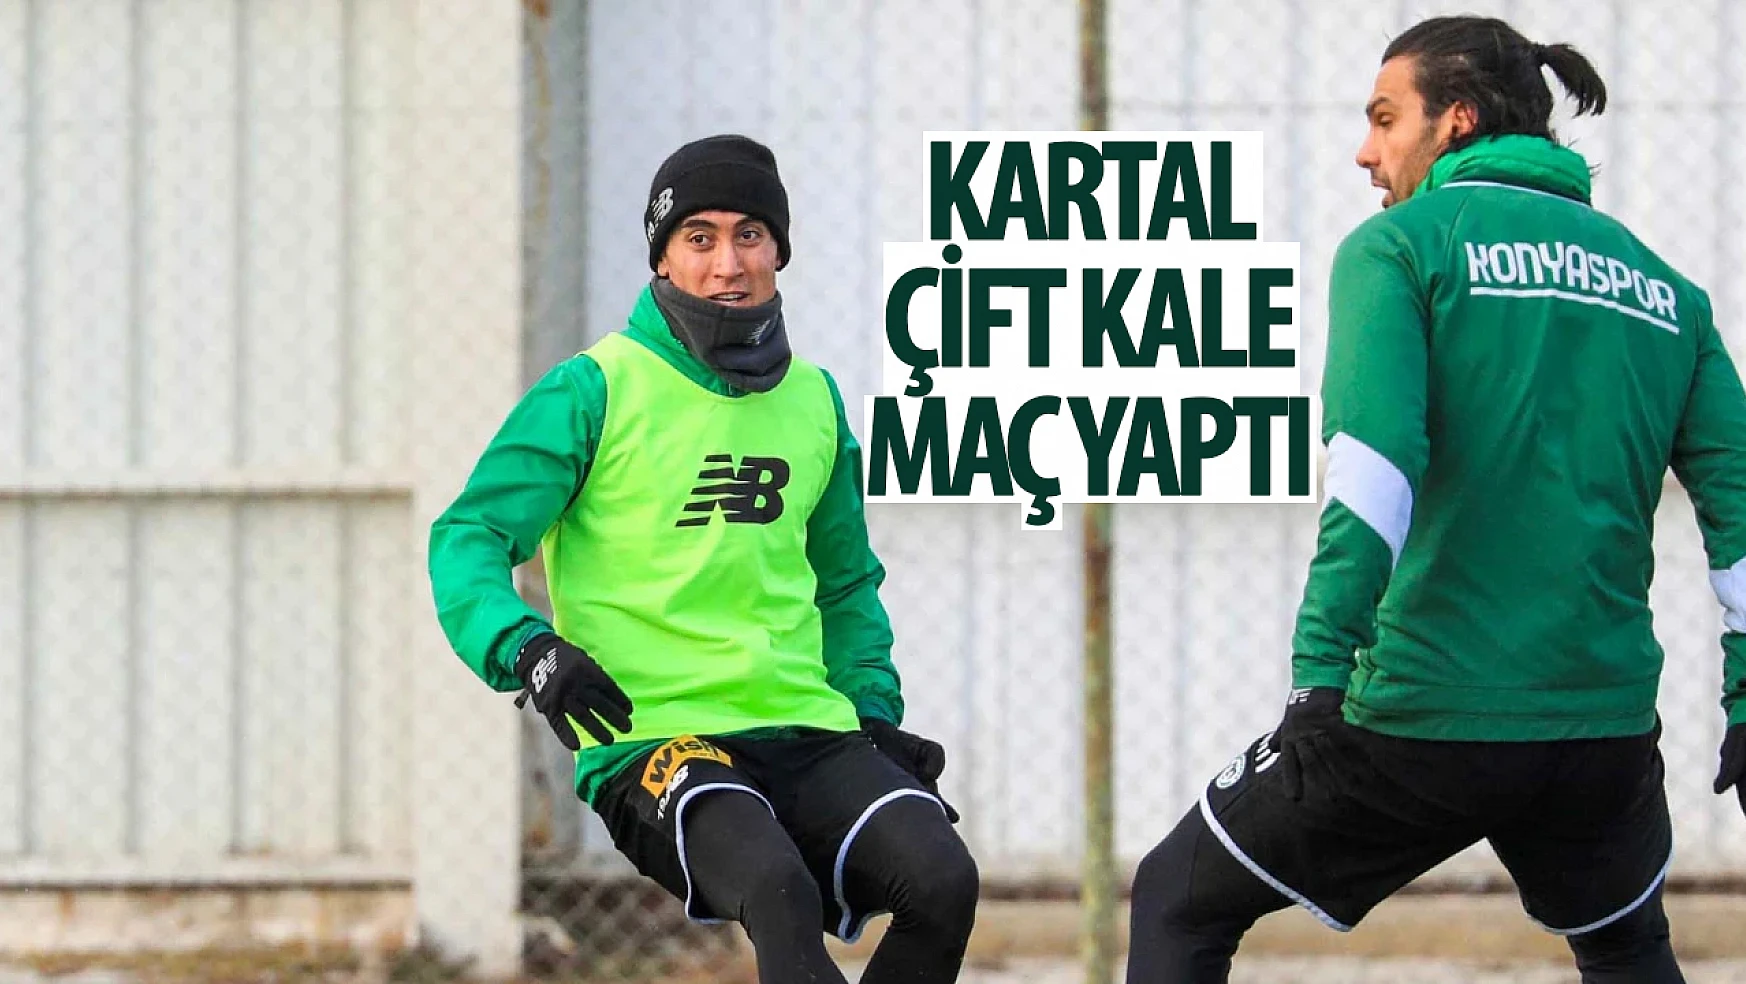 Konyaspor kötü gidişata son vermek istiyor: Kartal çift kale maç yaptı!